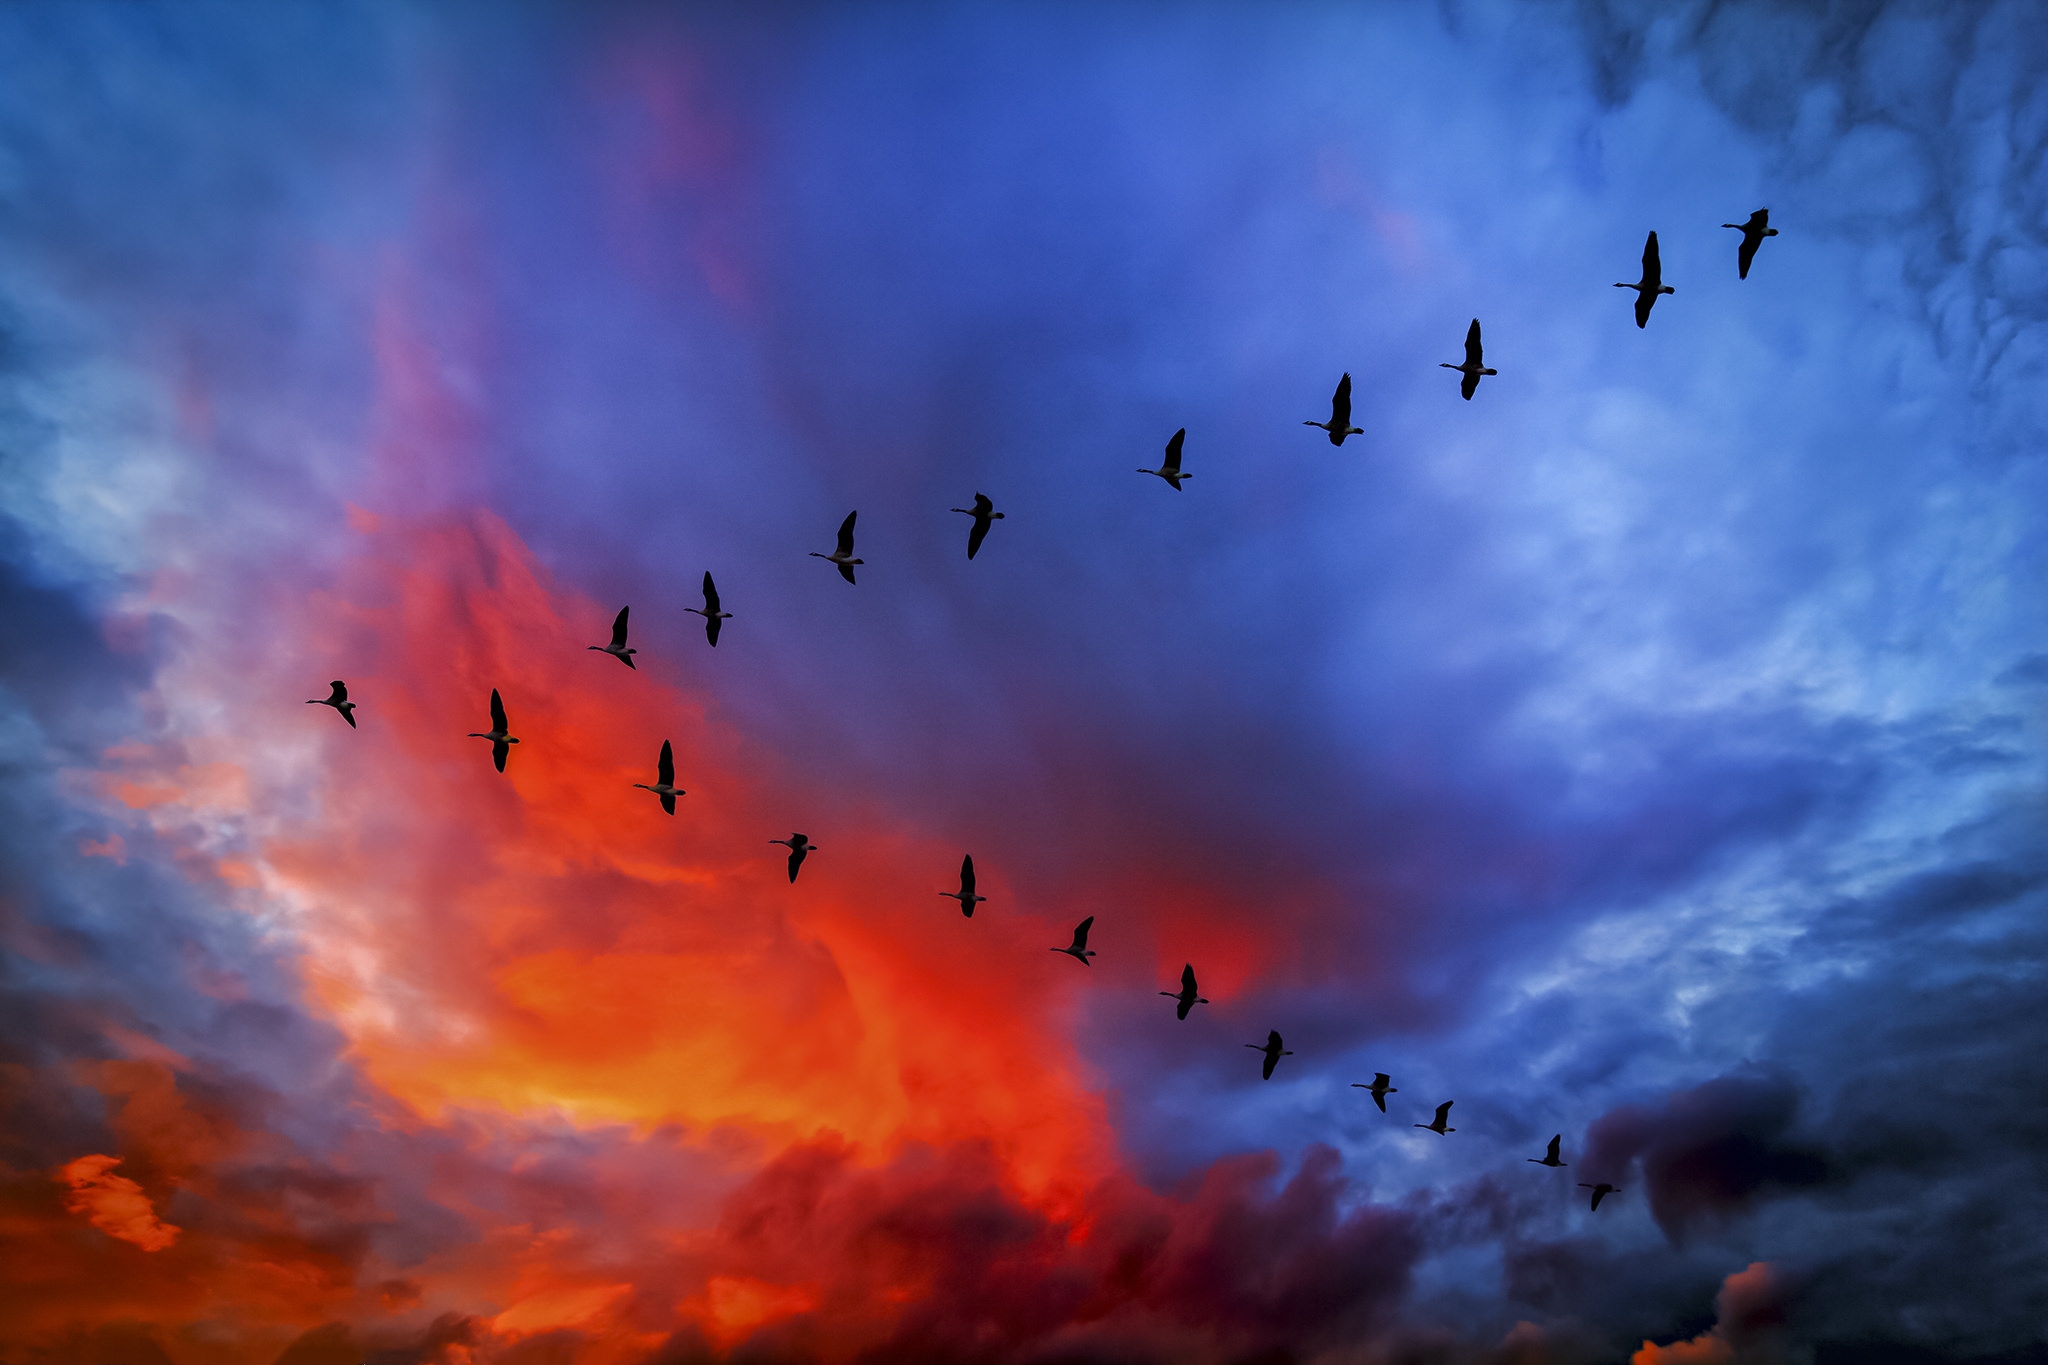 Словно стая птиц. Клин журавлей в небе. Картина журавлиный Клин. Птицы в небе. Птицы улетают.